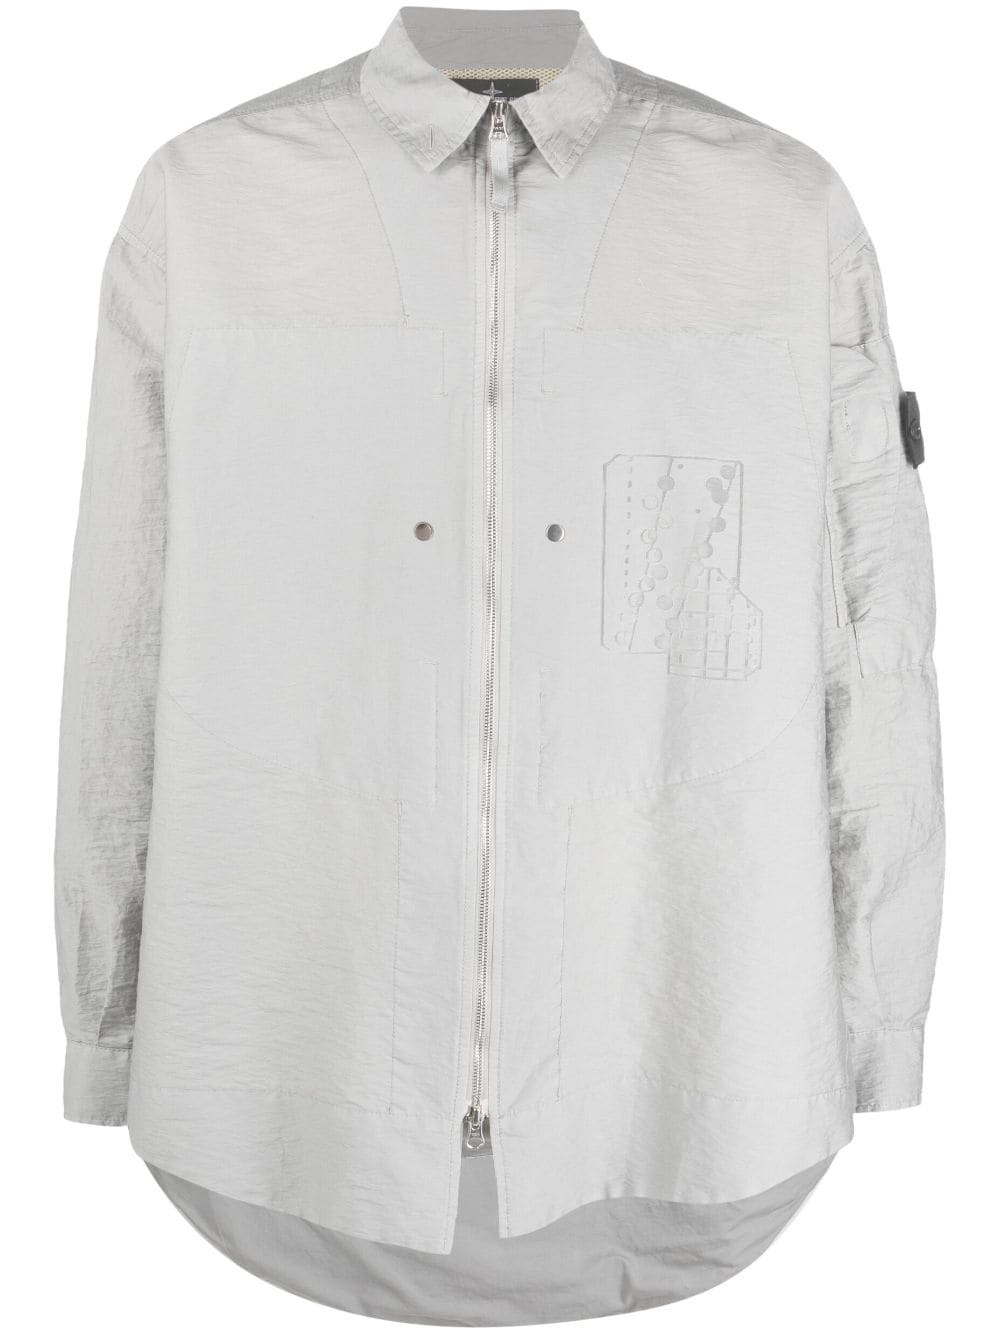 Compass-patch shirt jacket - 1